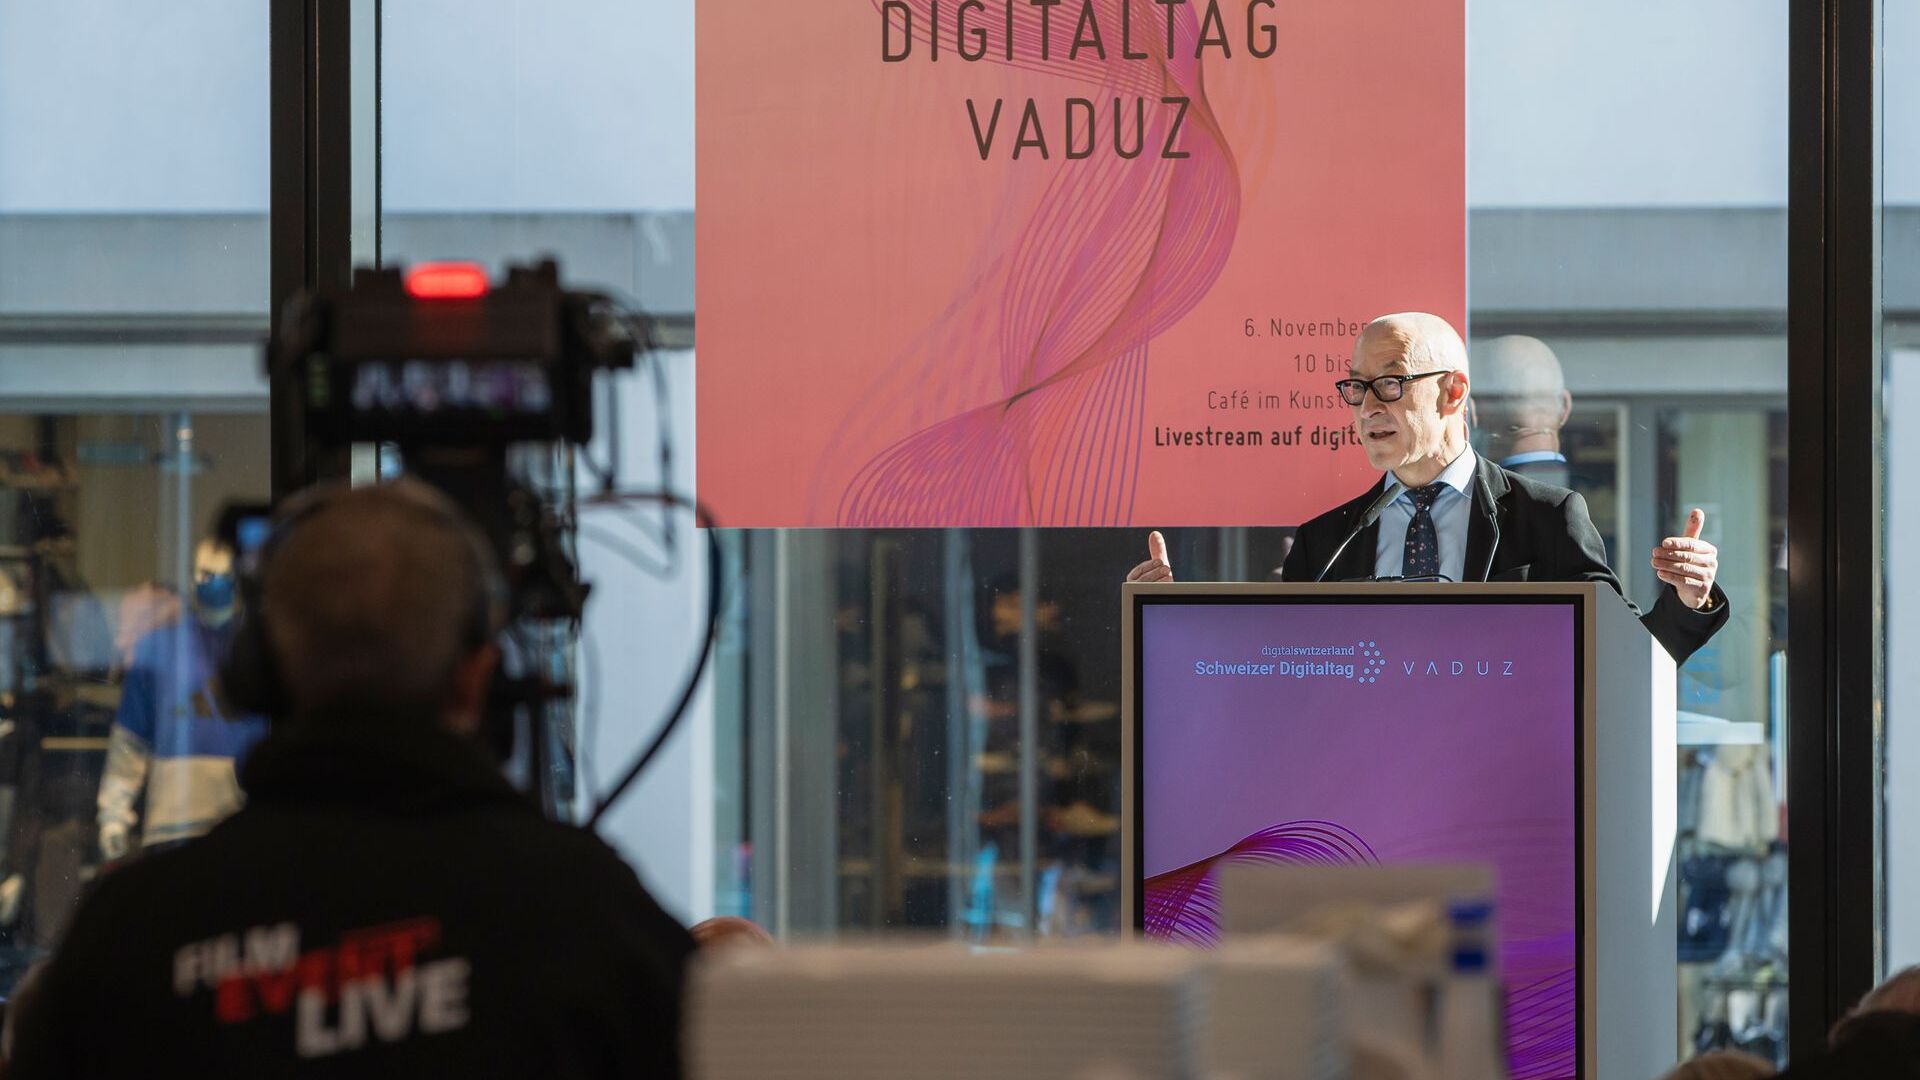 "Digitaltag Vaduz", ønsket velkommen av Kunstmuseum i hovedstaden i fyrstedømmet Liechtenstein lørdag 6. november 2021, vekket entusiasmen blant publikum og foredragsholdere i analogi med "Swiss Digital Day" påfølgende dag 10: intervensjonen fra den tyske futuristen og trendeksperten David Bosshart